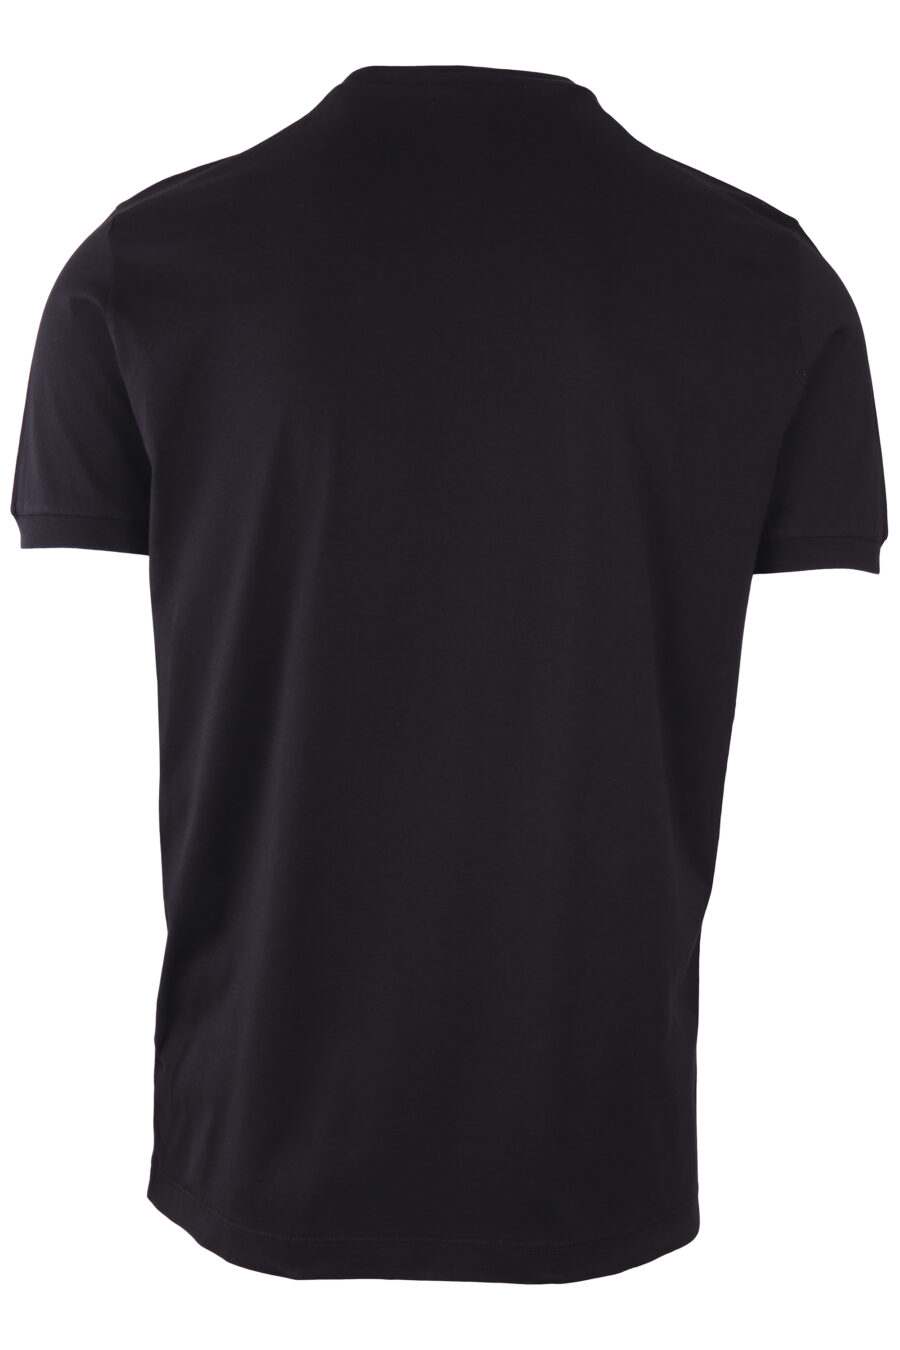 Camiseta negra con maxilogo "milano italy" - IMG 7714